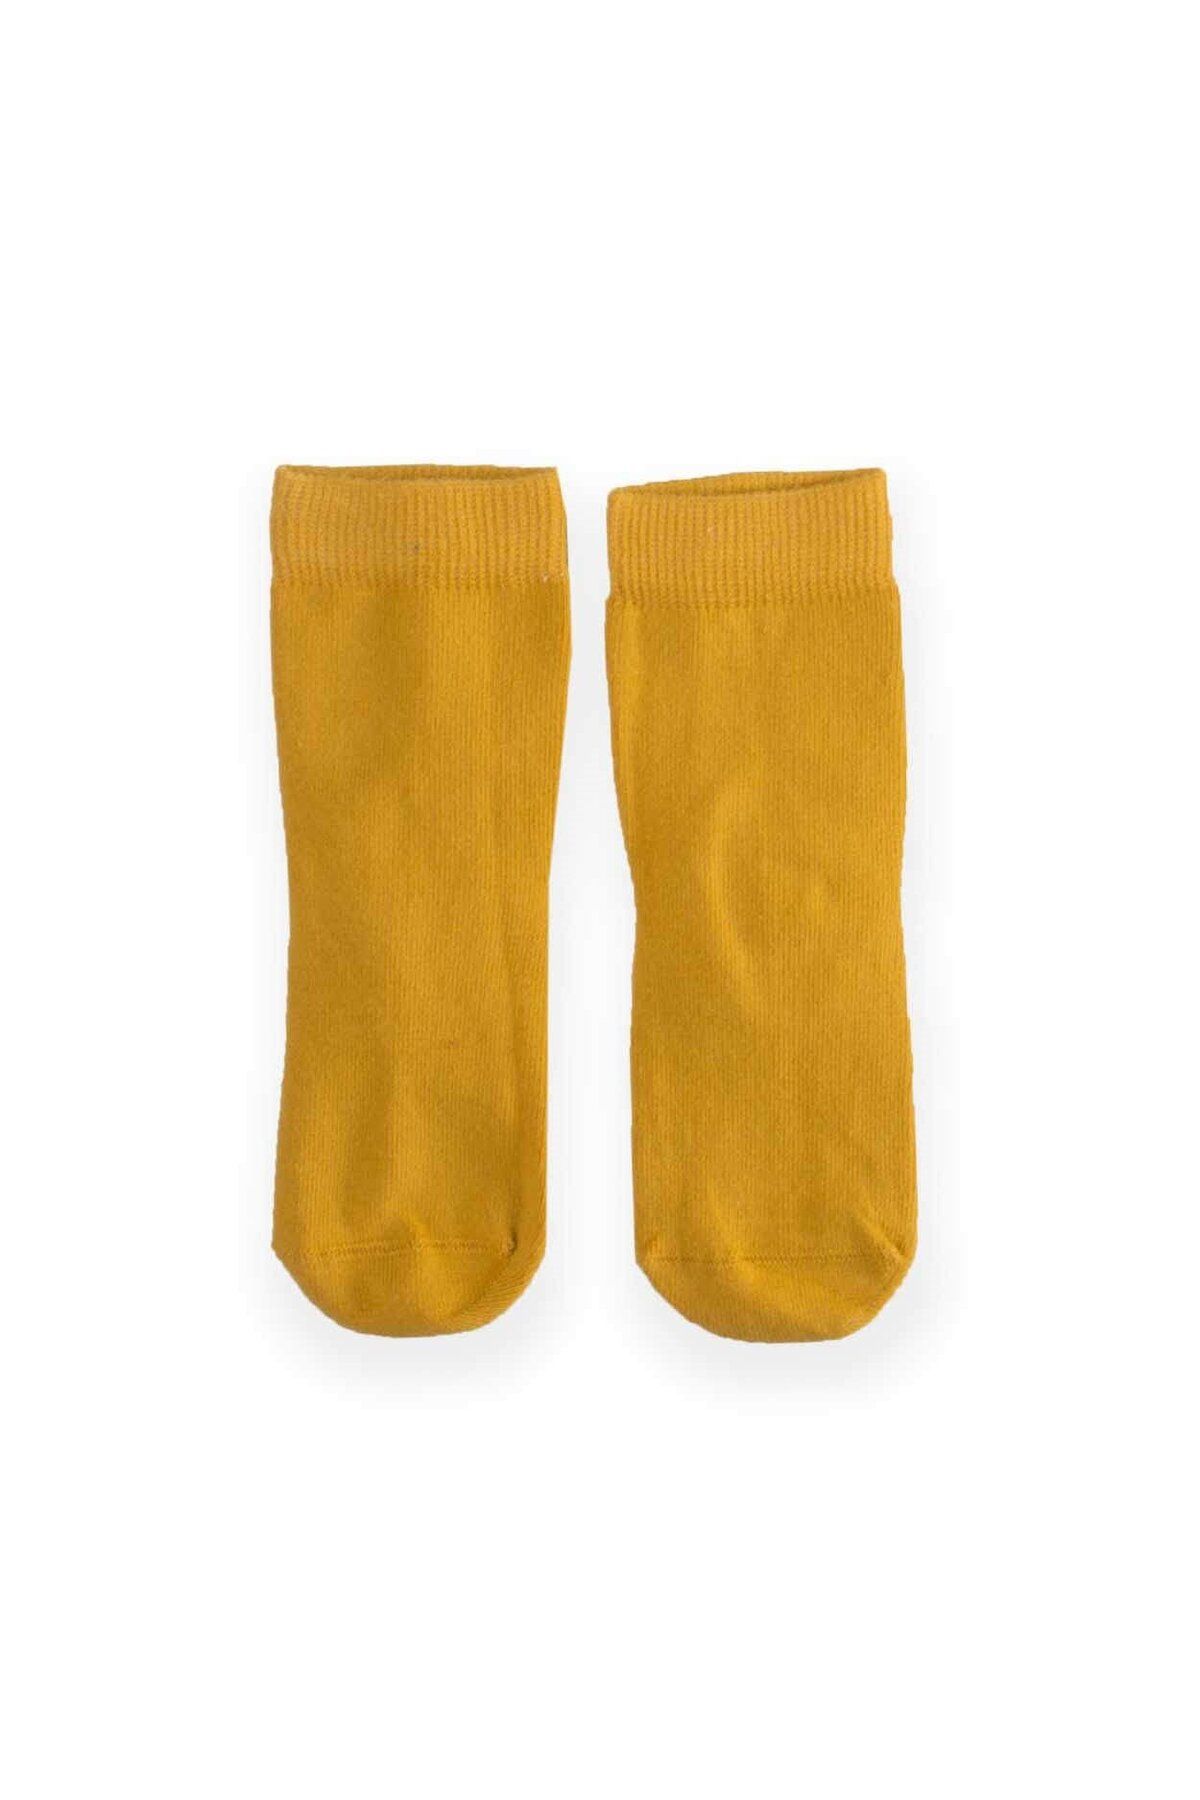 Cigit Çocuk Çorabı 2-9 Yaş Hardal Sarı